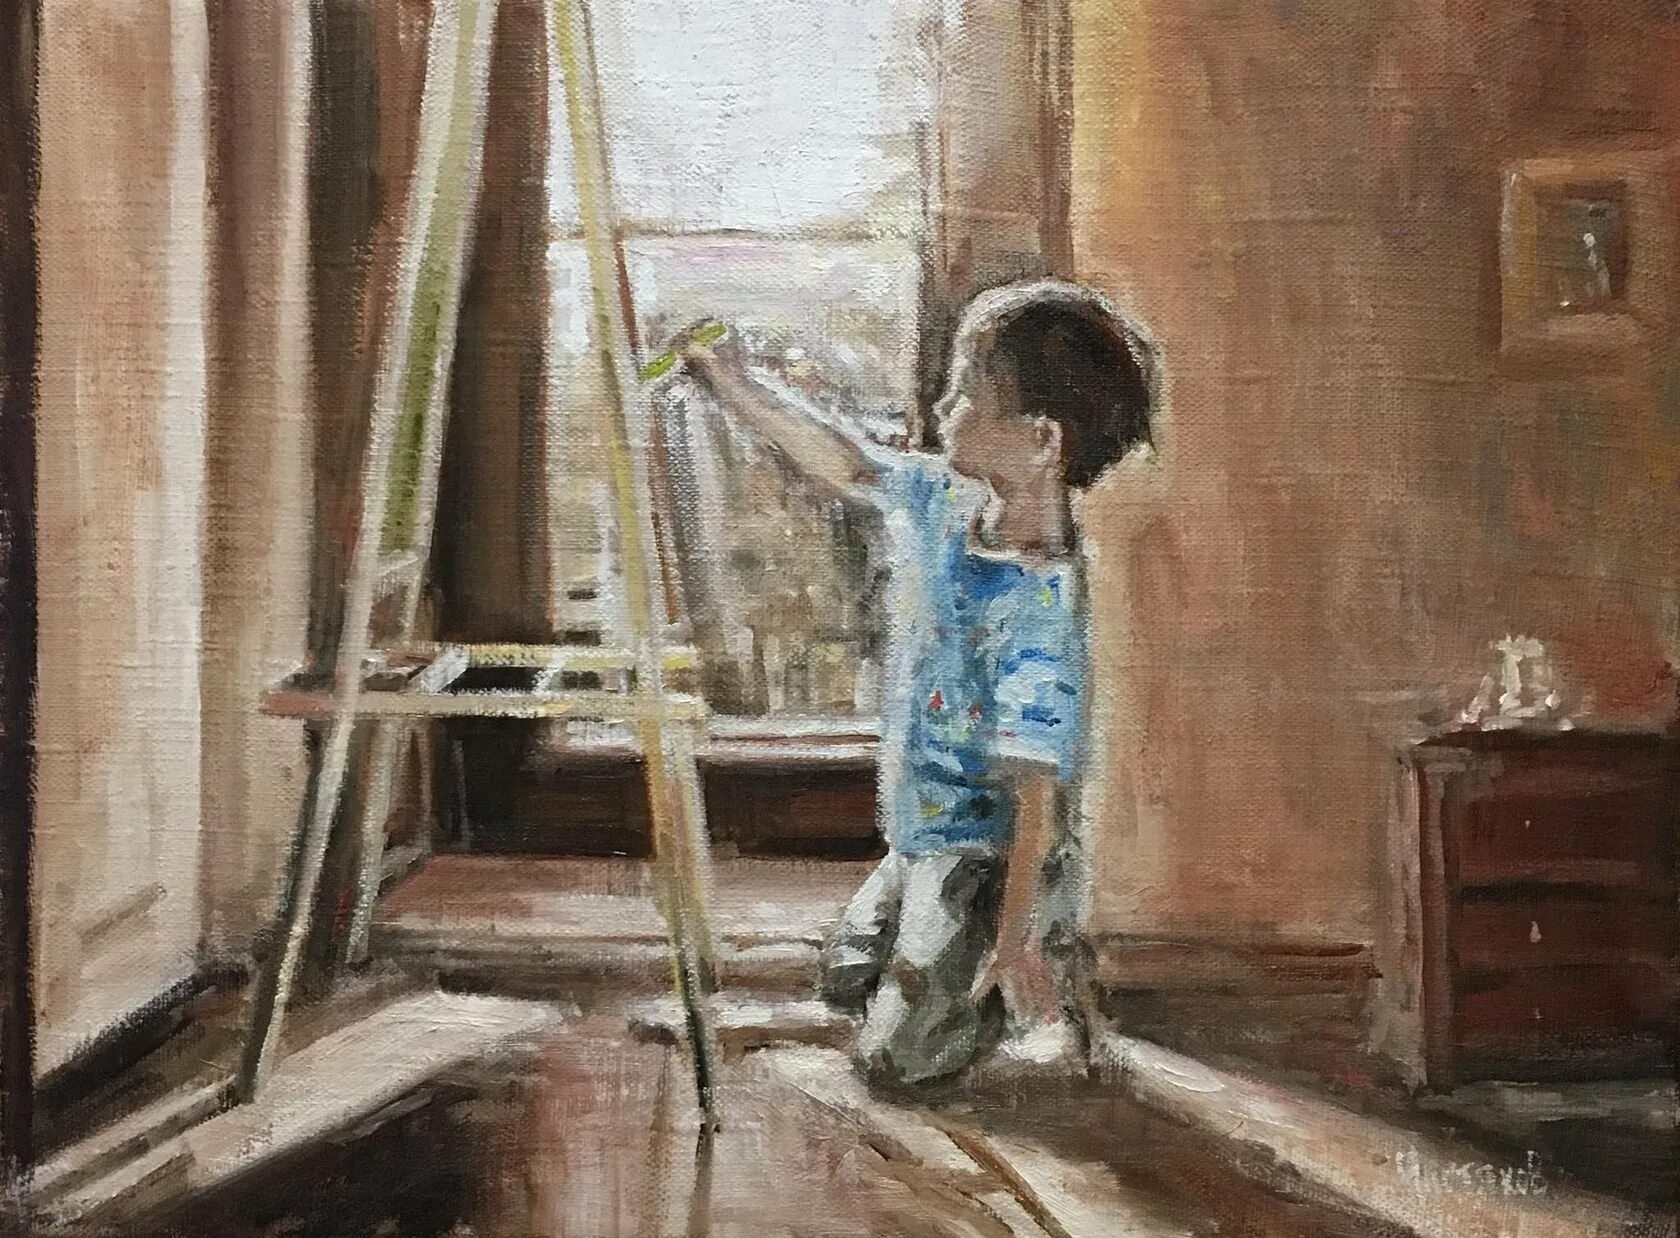 Картина мальчик с куклой на фоне окна. Картины художников с детьми. Мальчики в картинах художников. Мальчик художник. Юный художник.